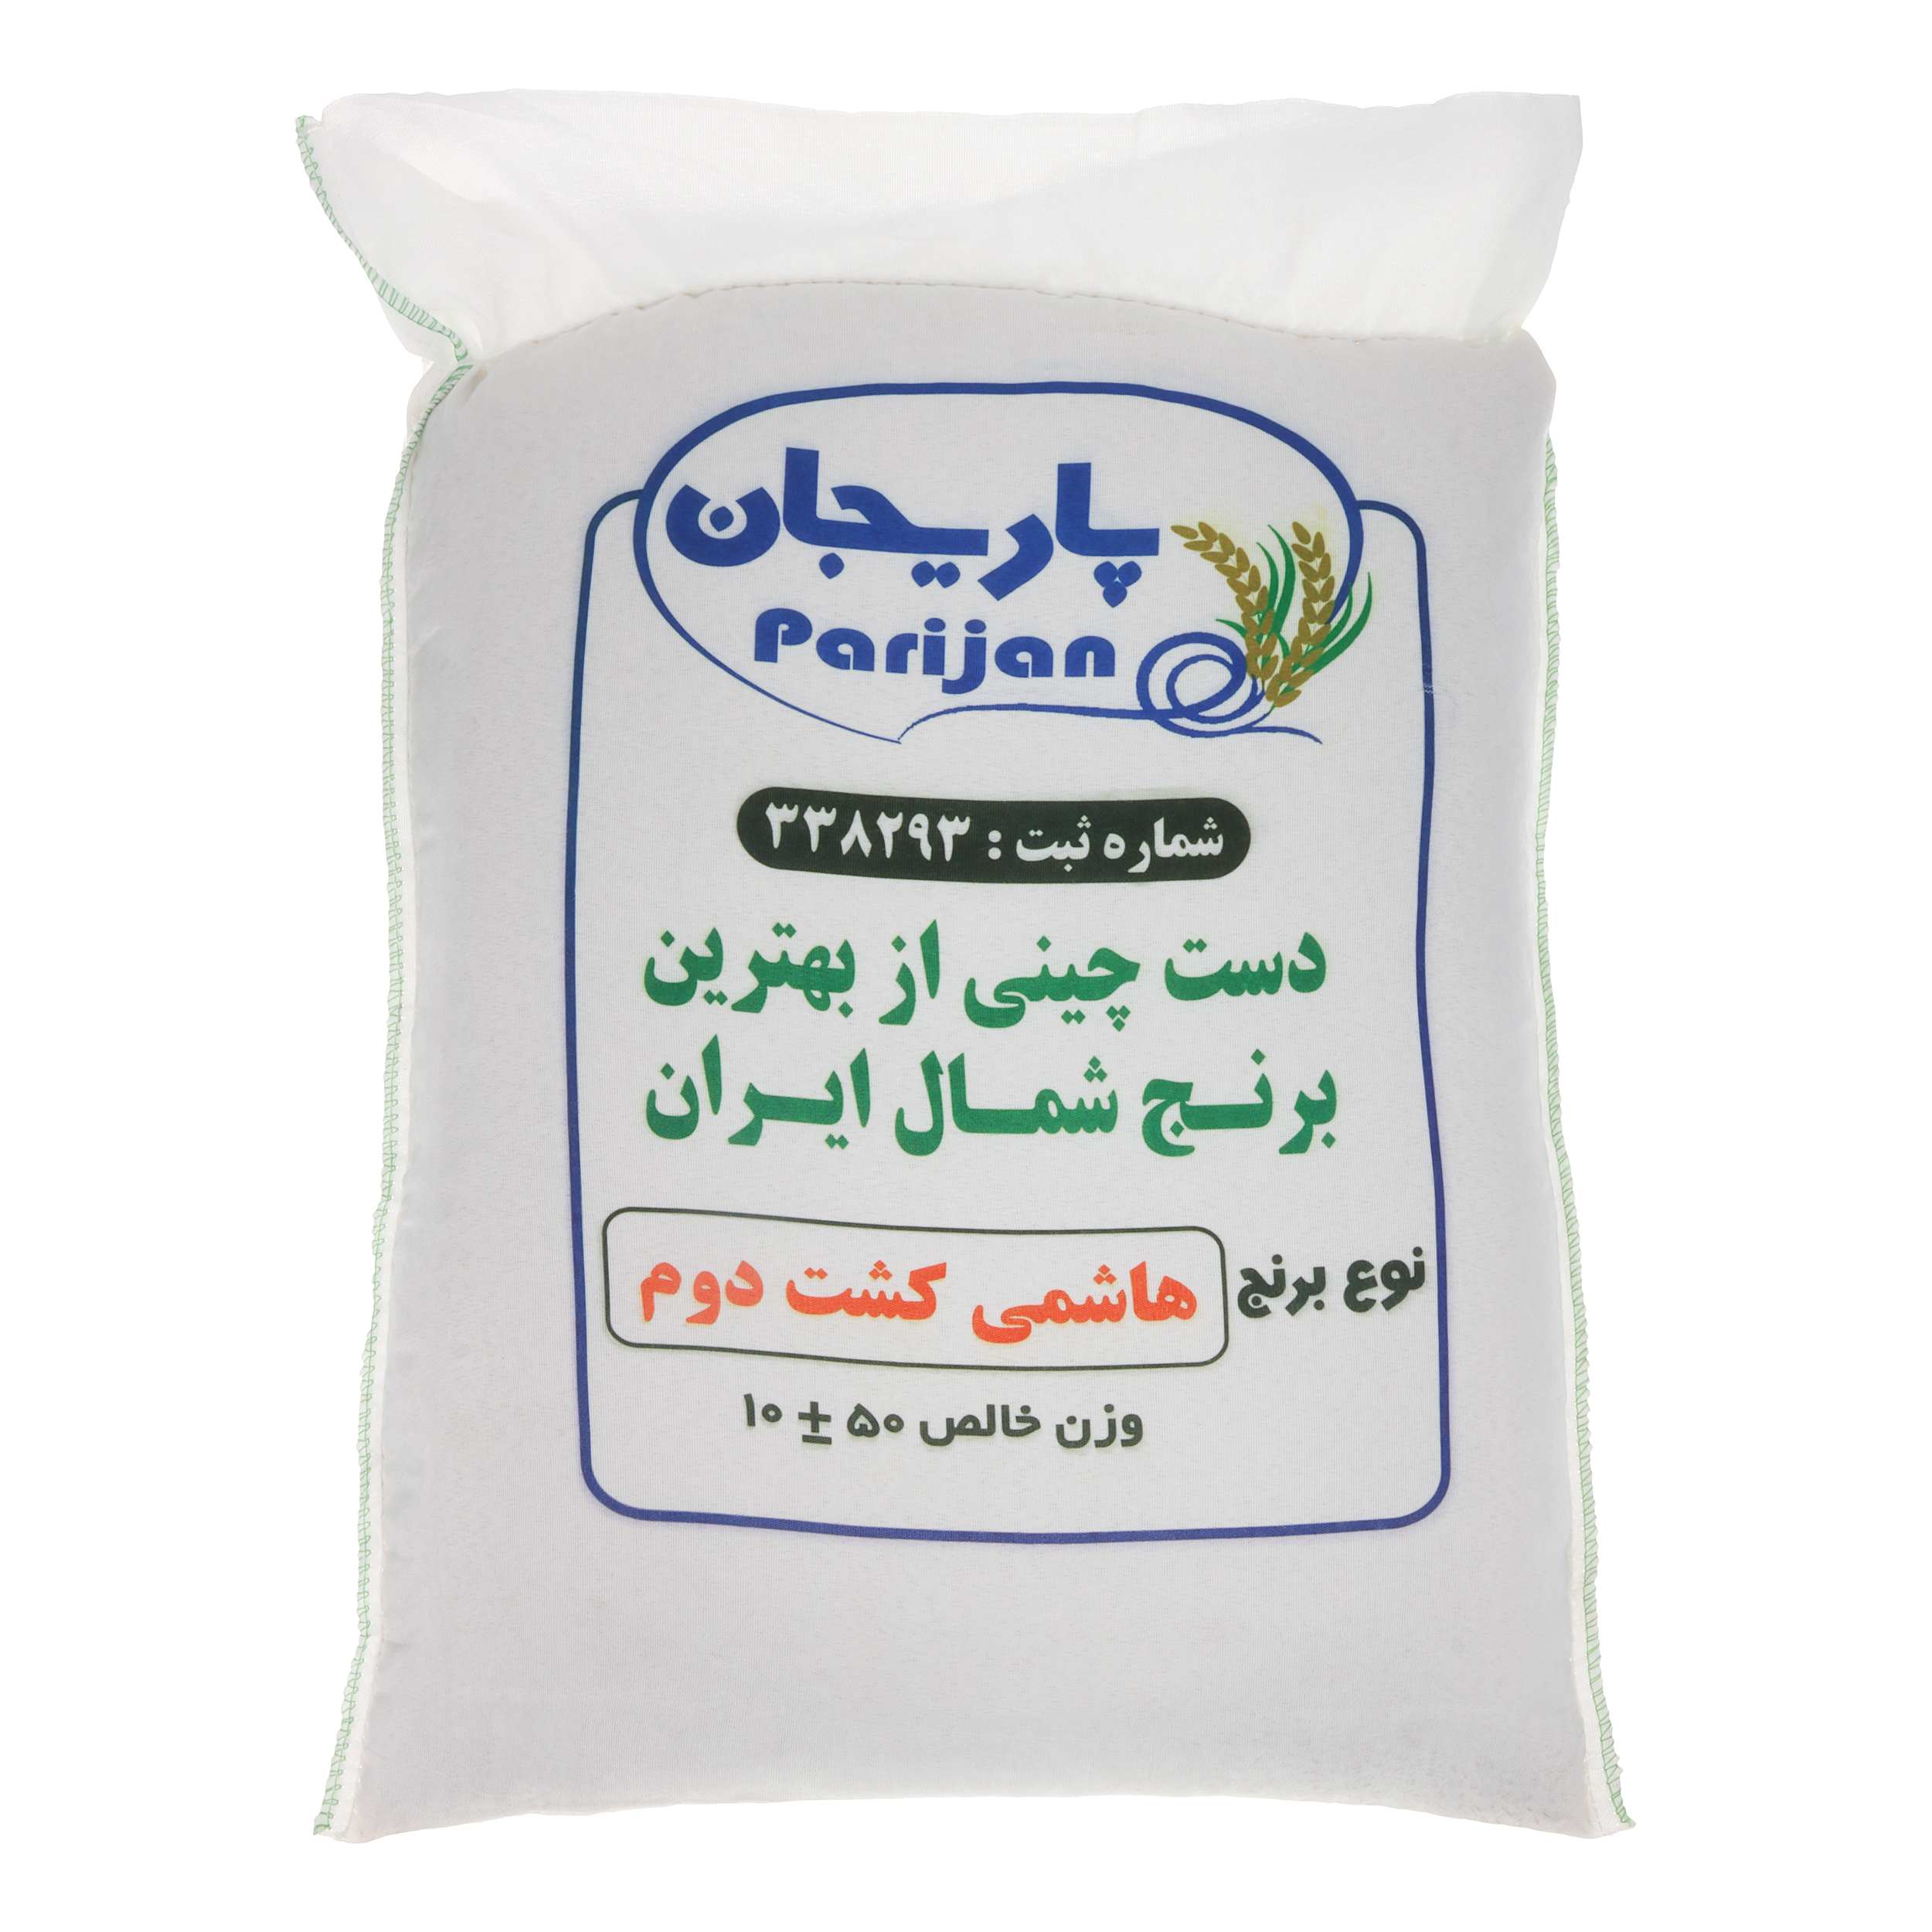 نکته خرید - قیمت روز برنج درجه یک هاشمی کشت دوم پاریجان - 10 کیلوگرم خرید